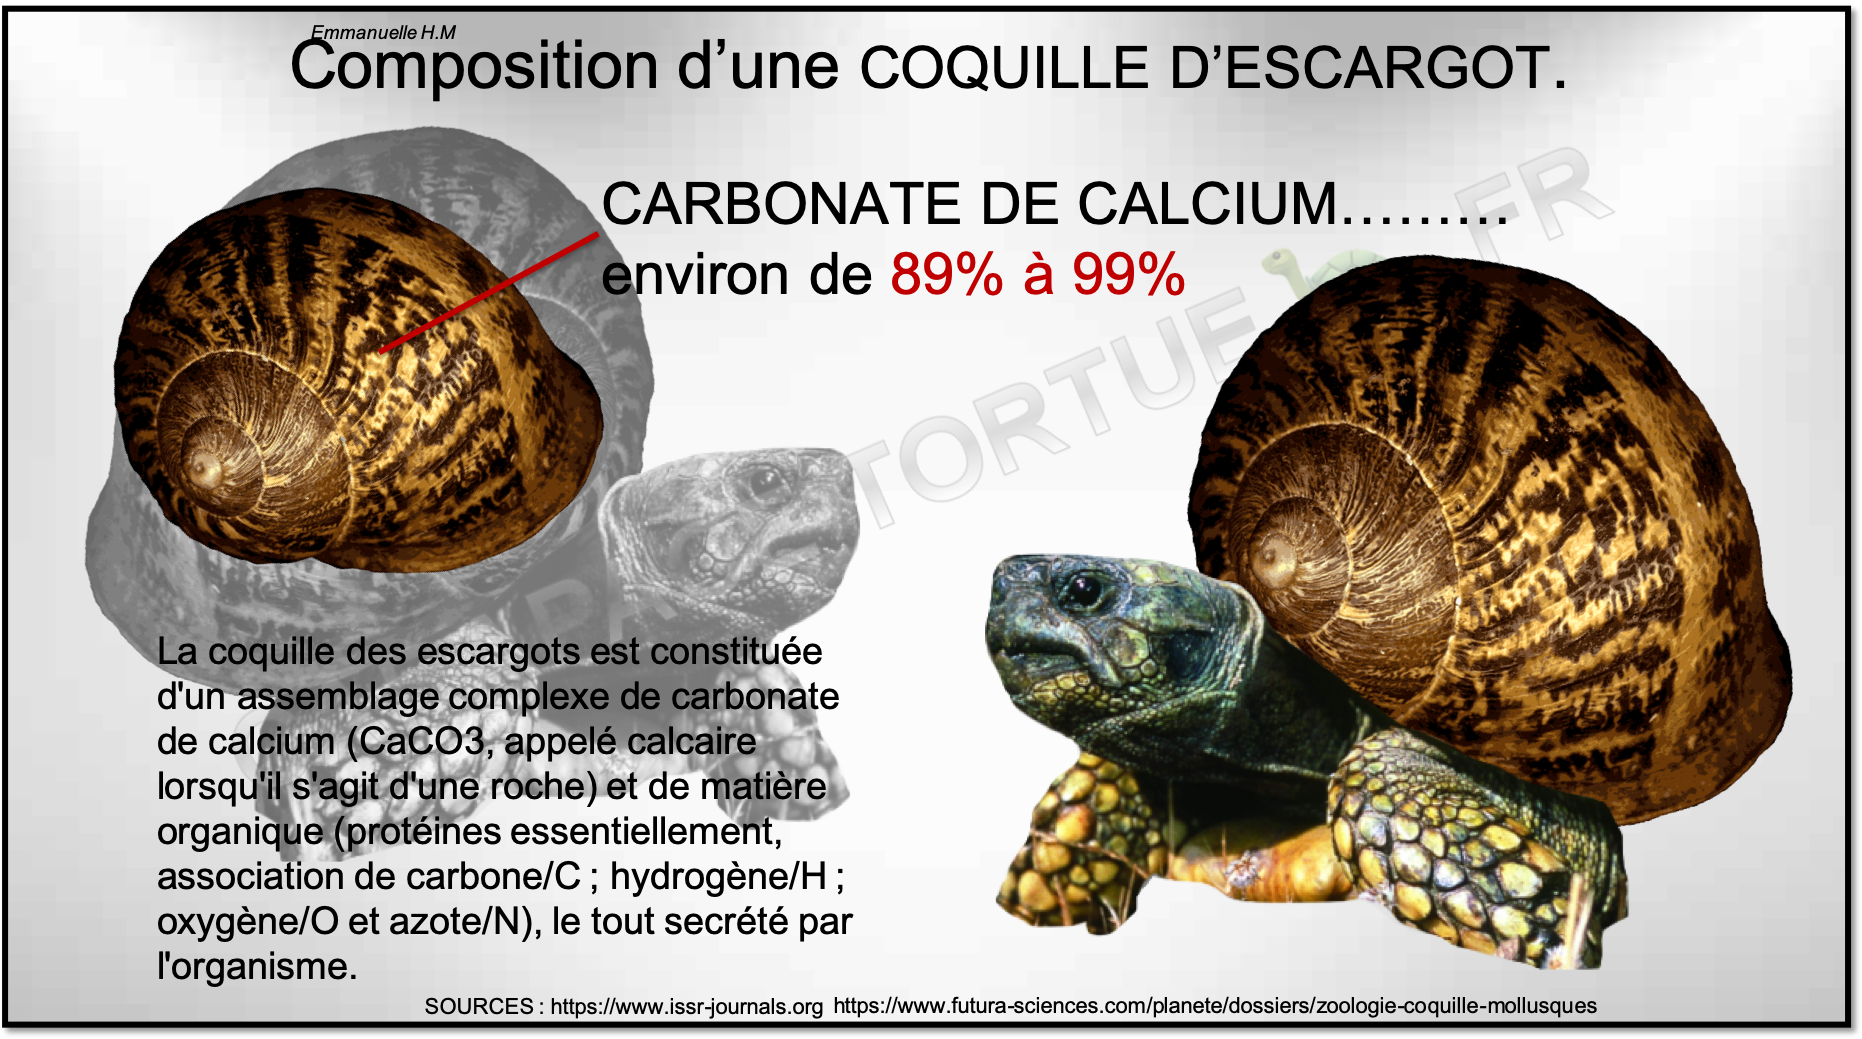 Composition coquille escargot calcium